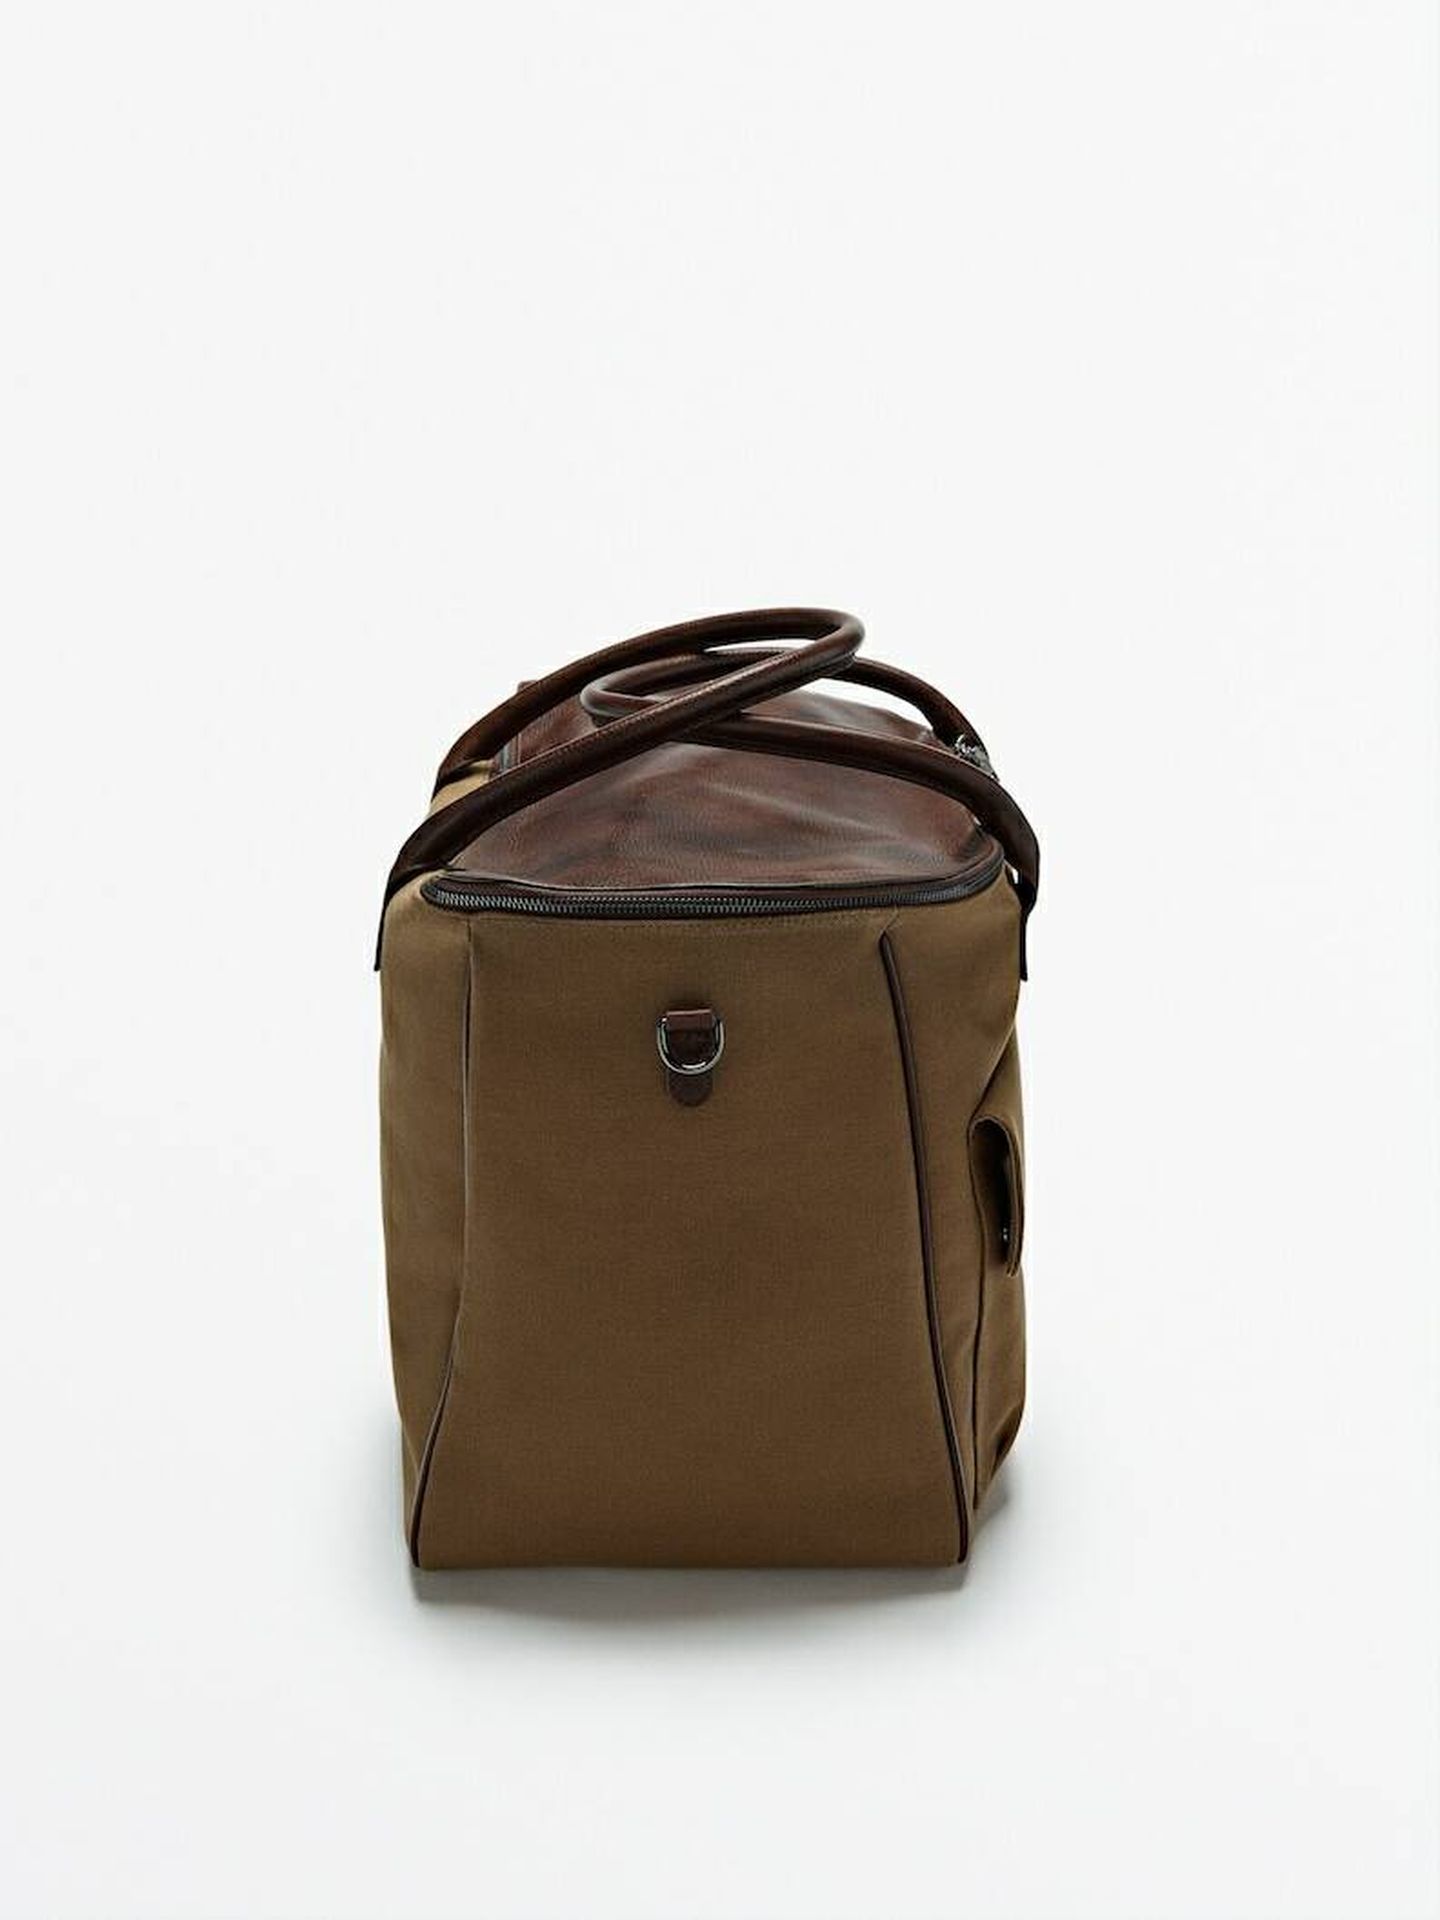 Así es el bolso de de Massimo Dutti que hemos comprado en redacción